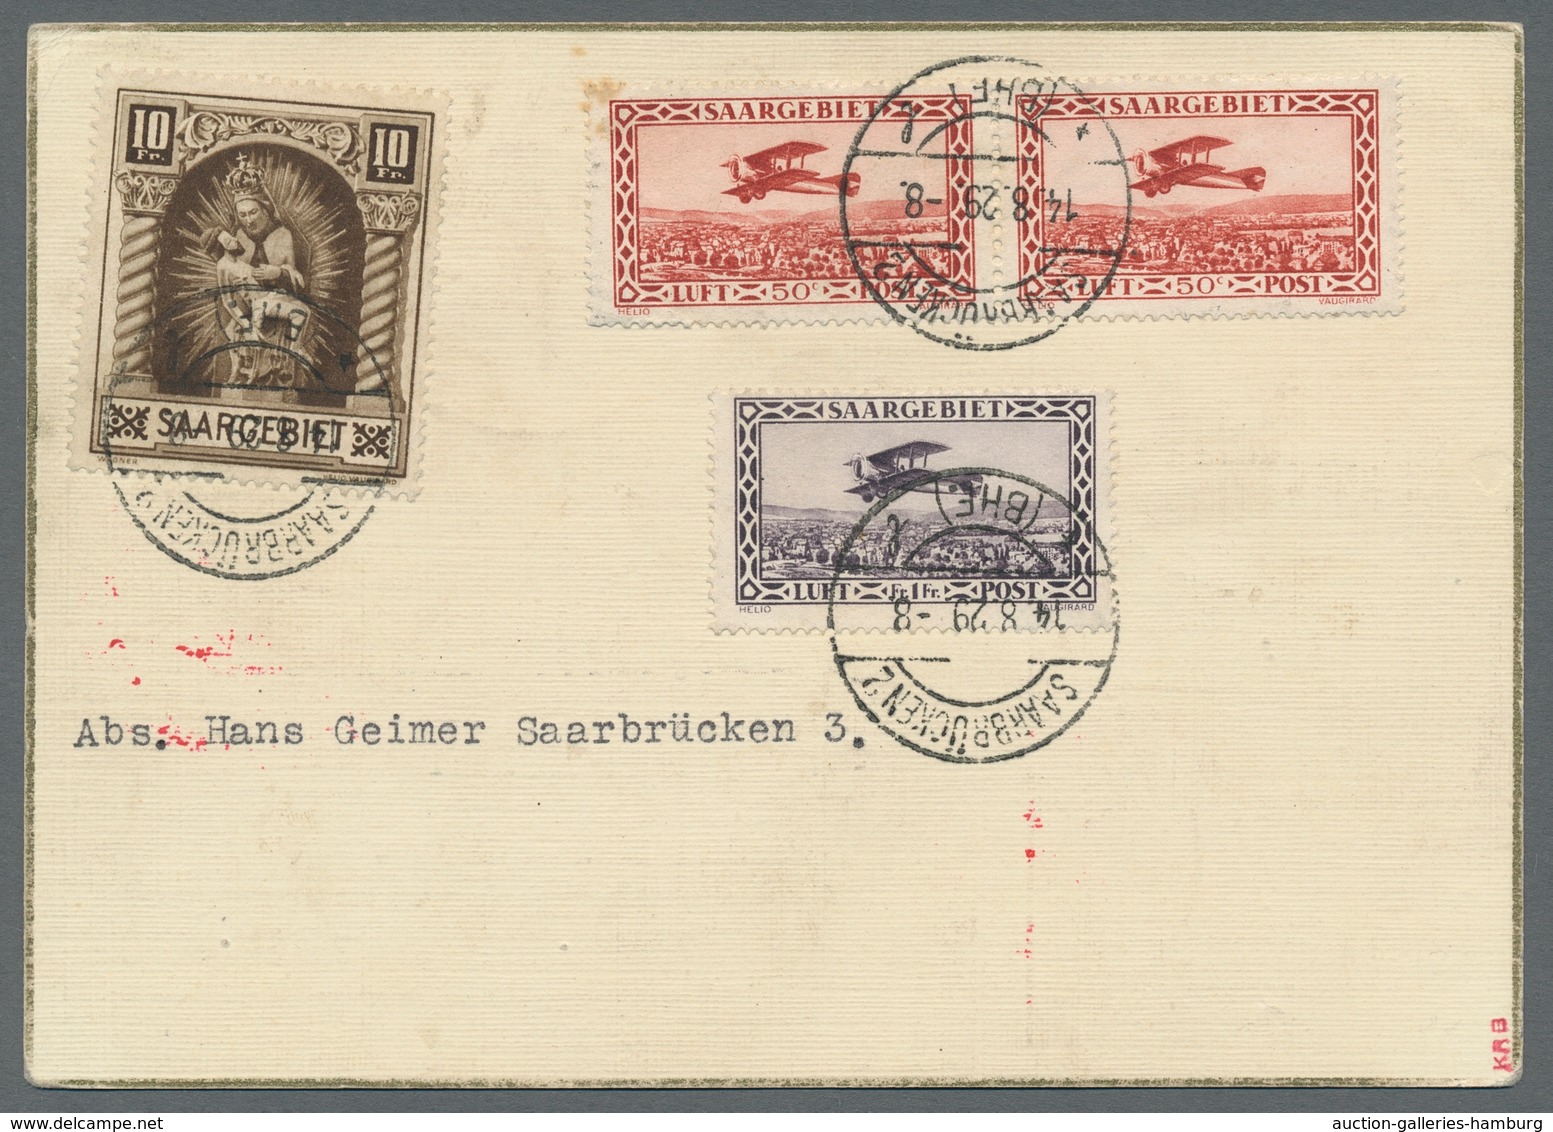 Zeppelinpost Deutschland: 1929 - Weltrundfahrt/Etappe Friedrichshafen-Lakehurst, Hochwertig Frankier - Correo Aéreo & Zeppelin